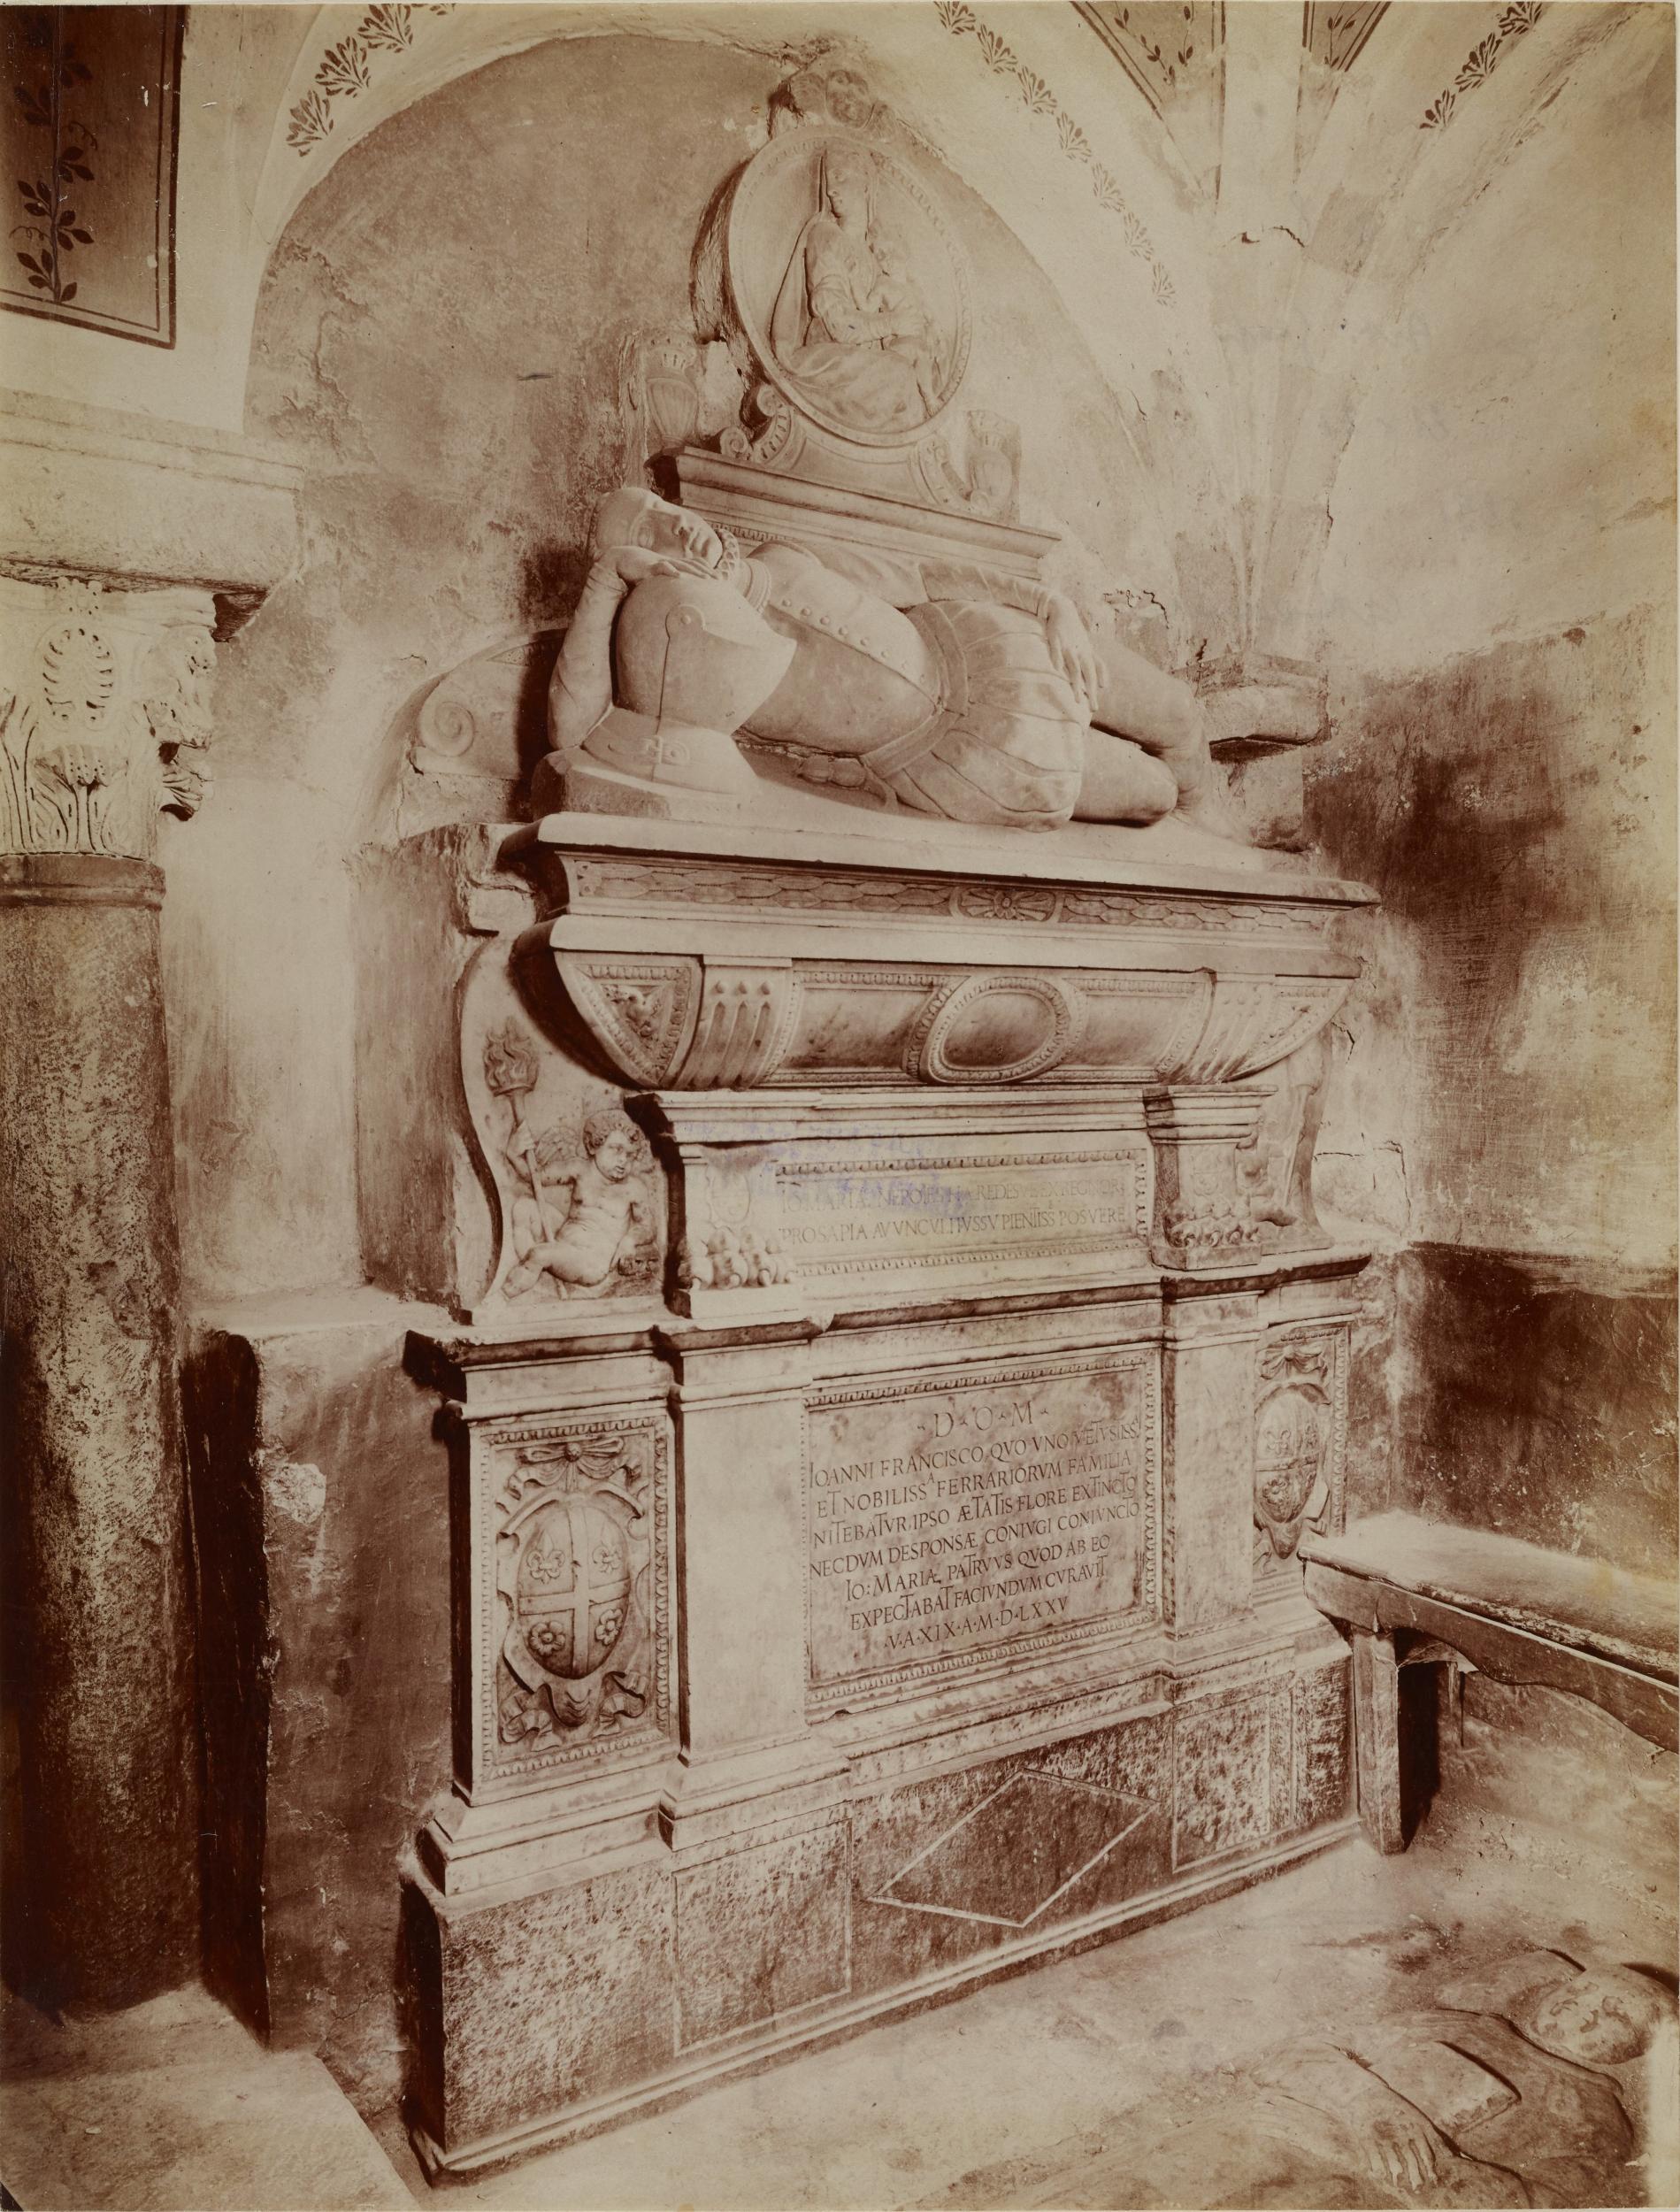 Fotografo non identificato, Bitonto - Cattedrale di S. Valentino, cripta, monumento sepolcrale di Giovanni Francesco Ferrari, 1876-1900, albumina/carta, MPI137893